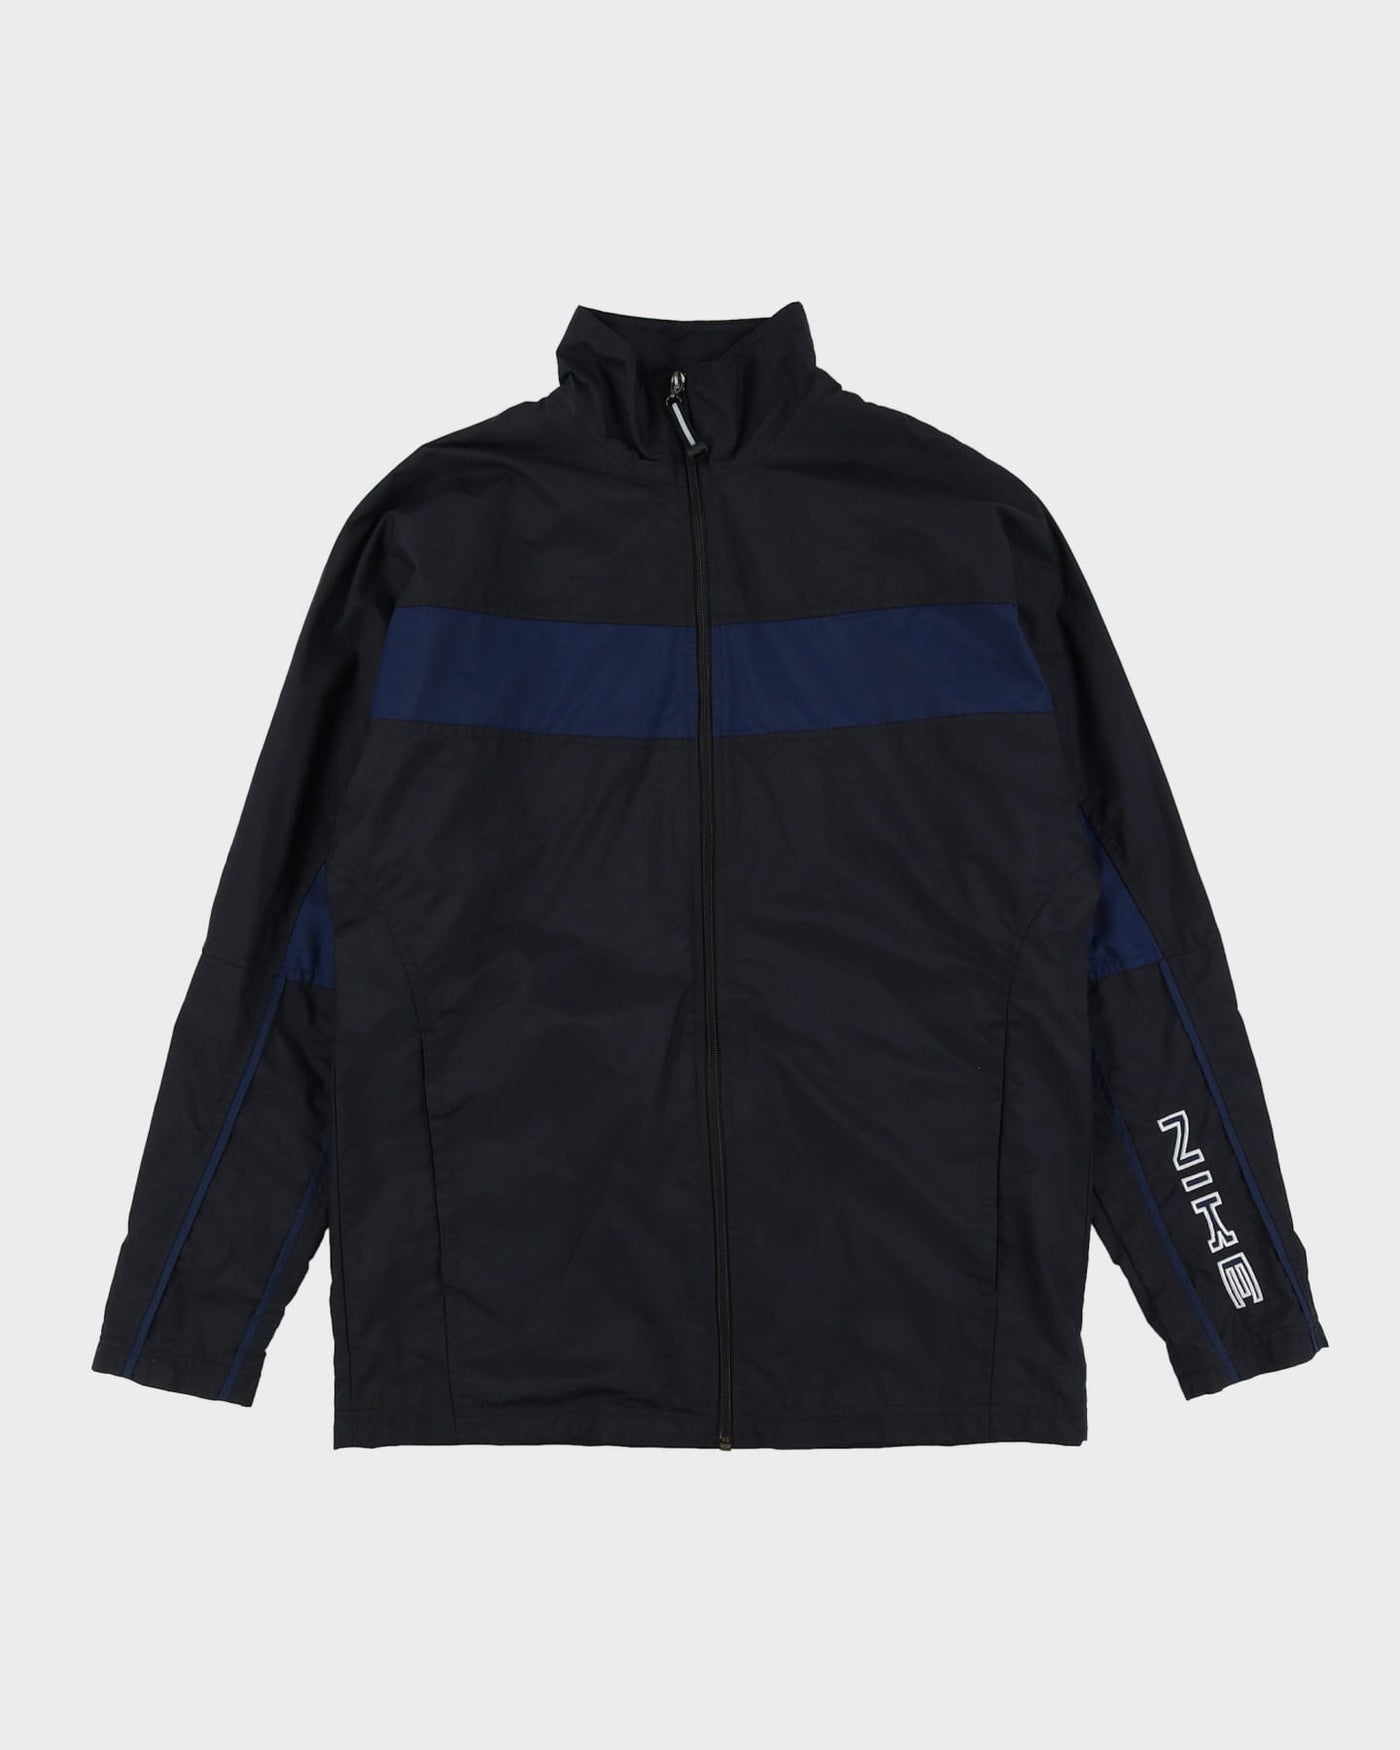 00s Nike Black / Blue Detailed Windbreaker Jacket - S